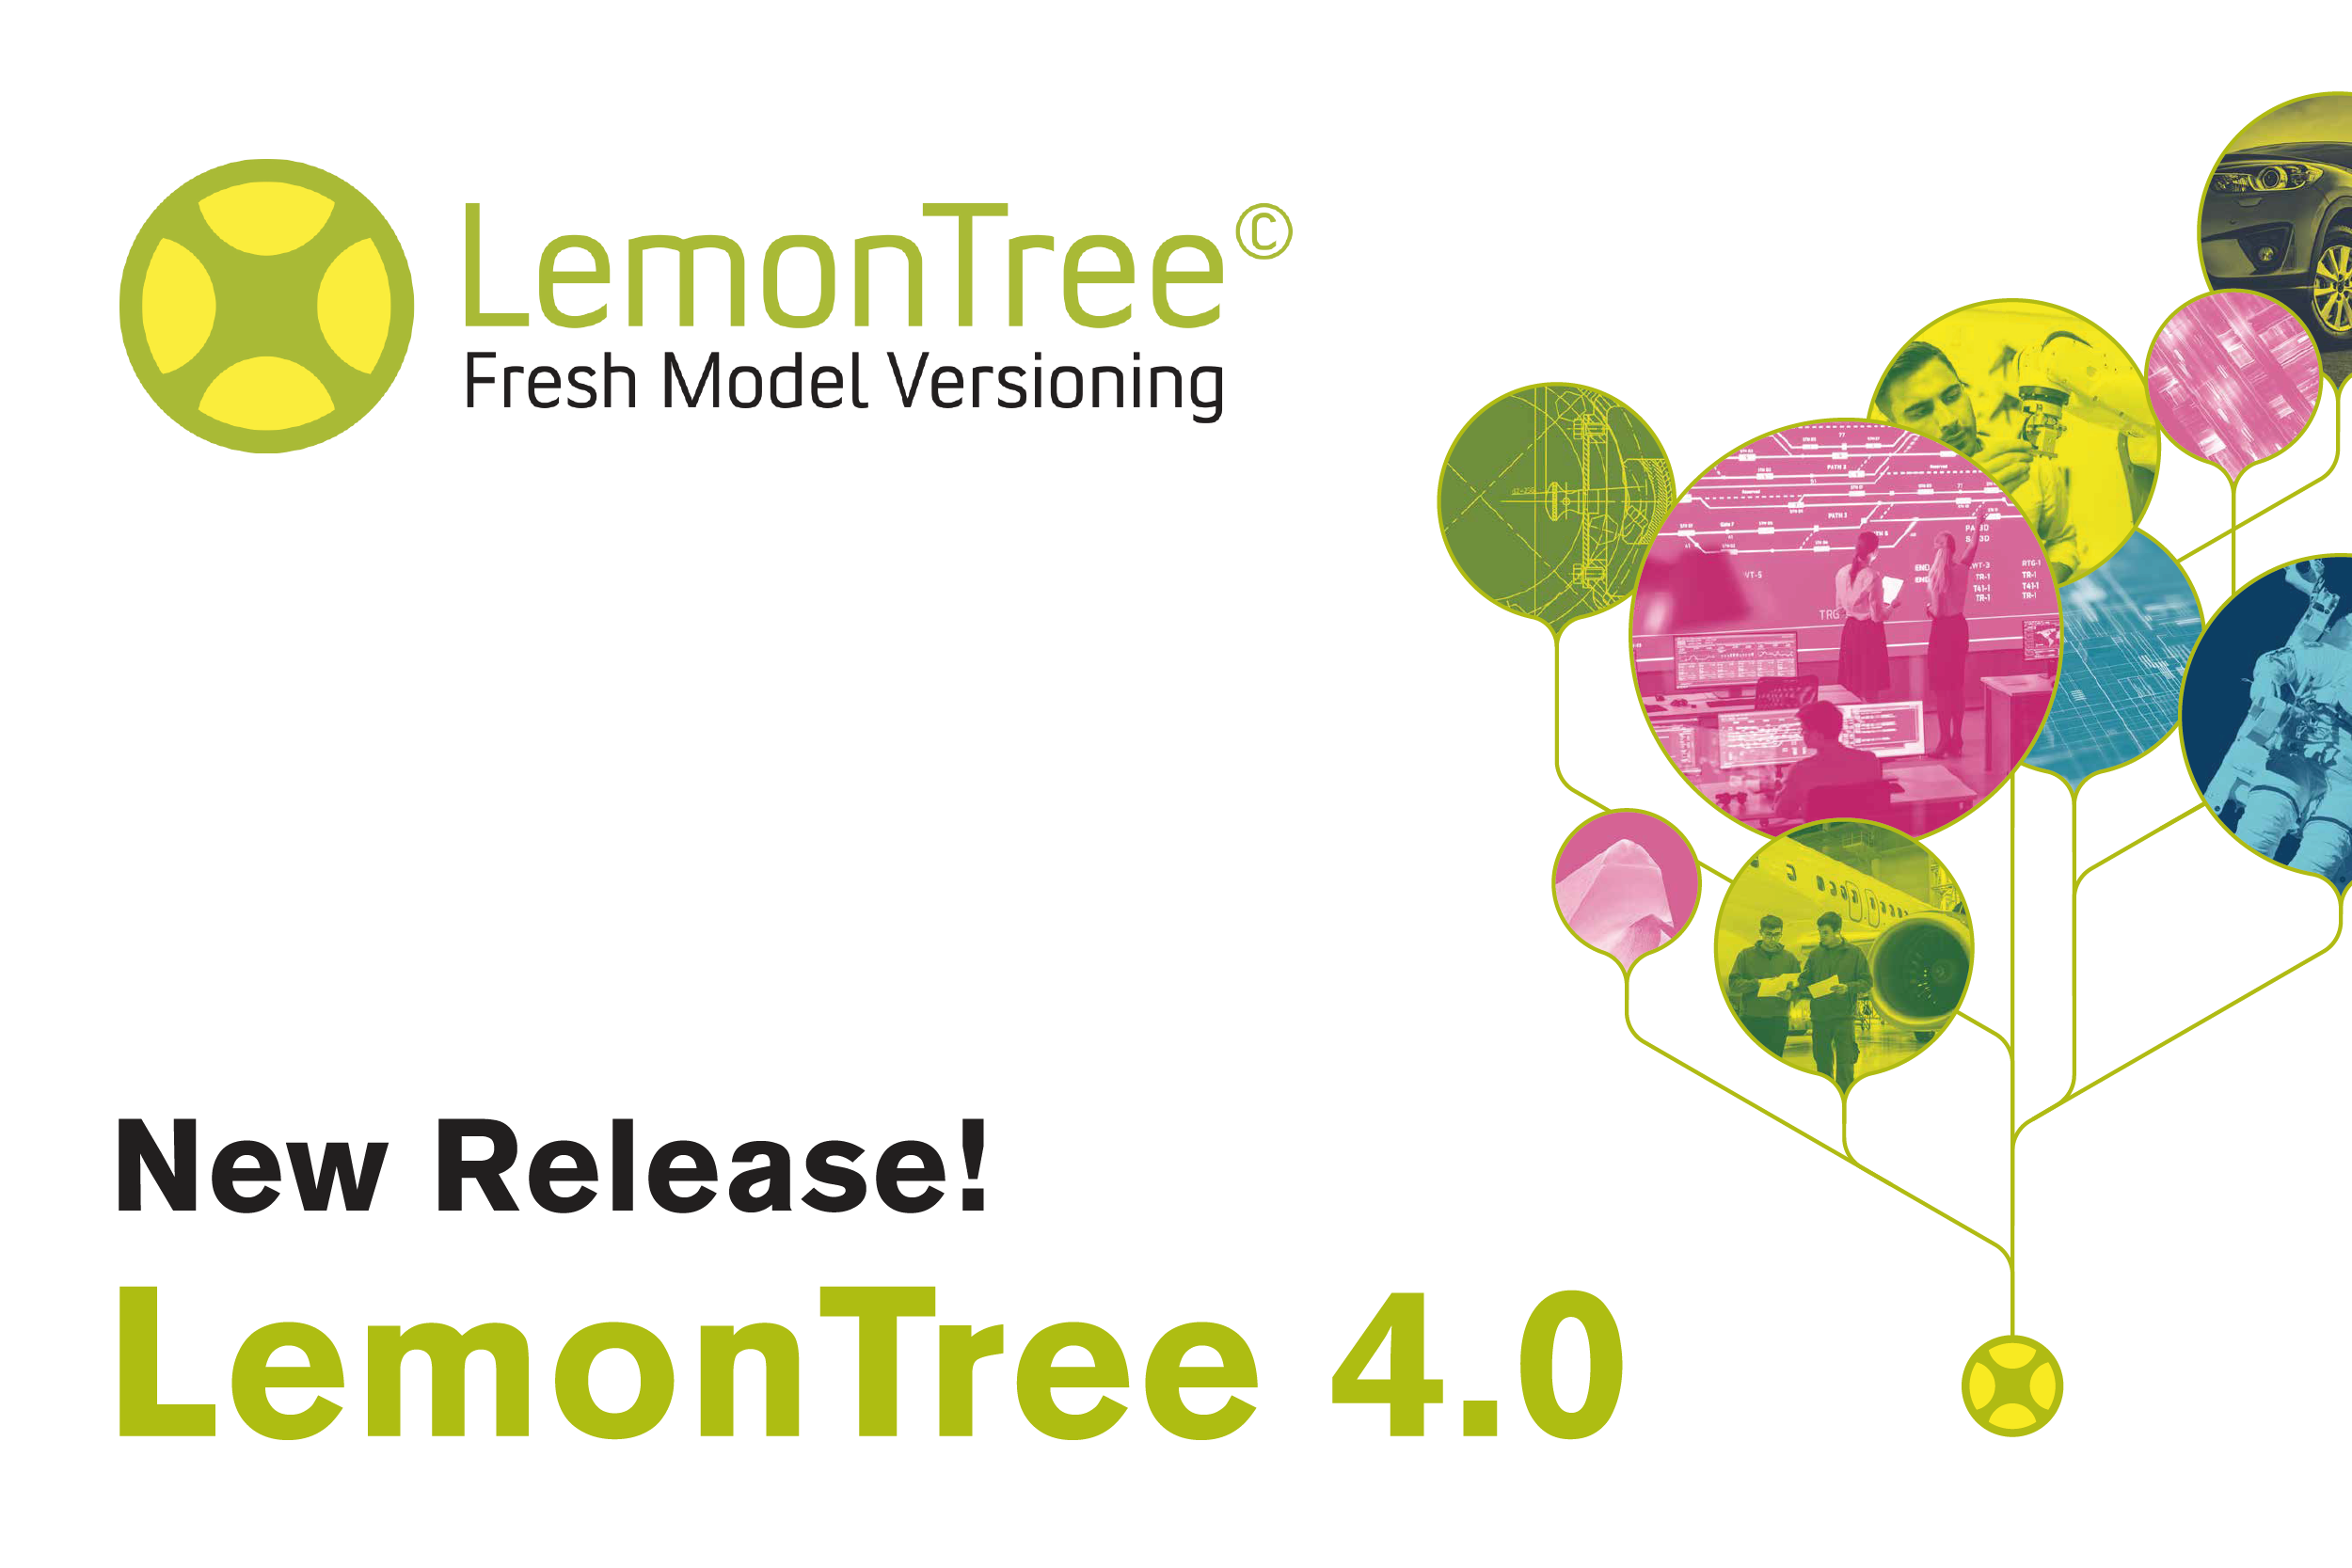 LemonTree 4.0